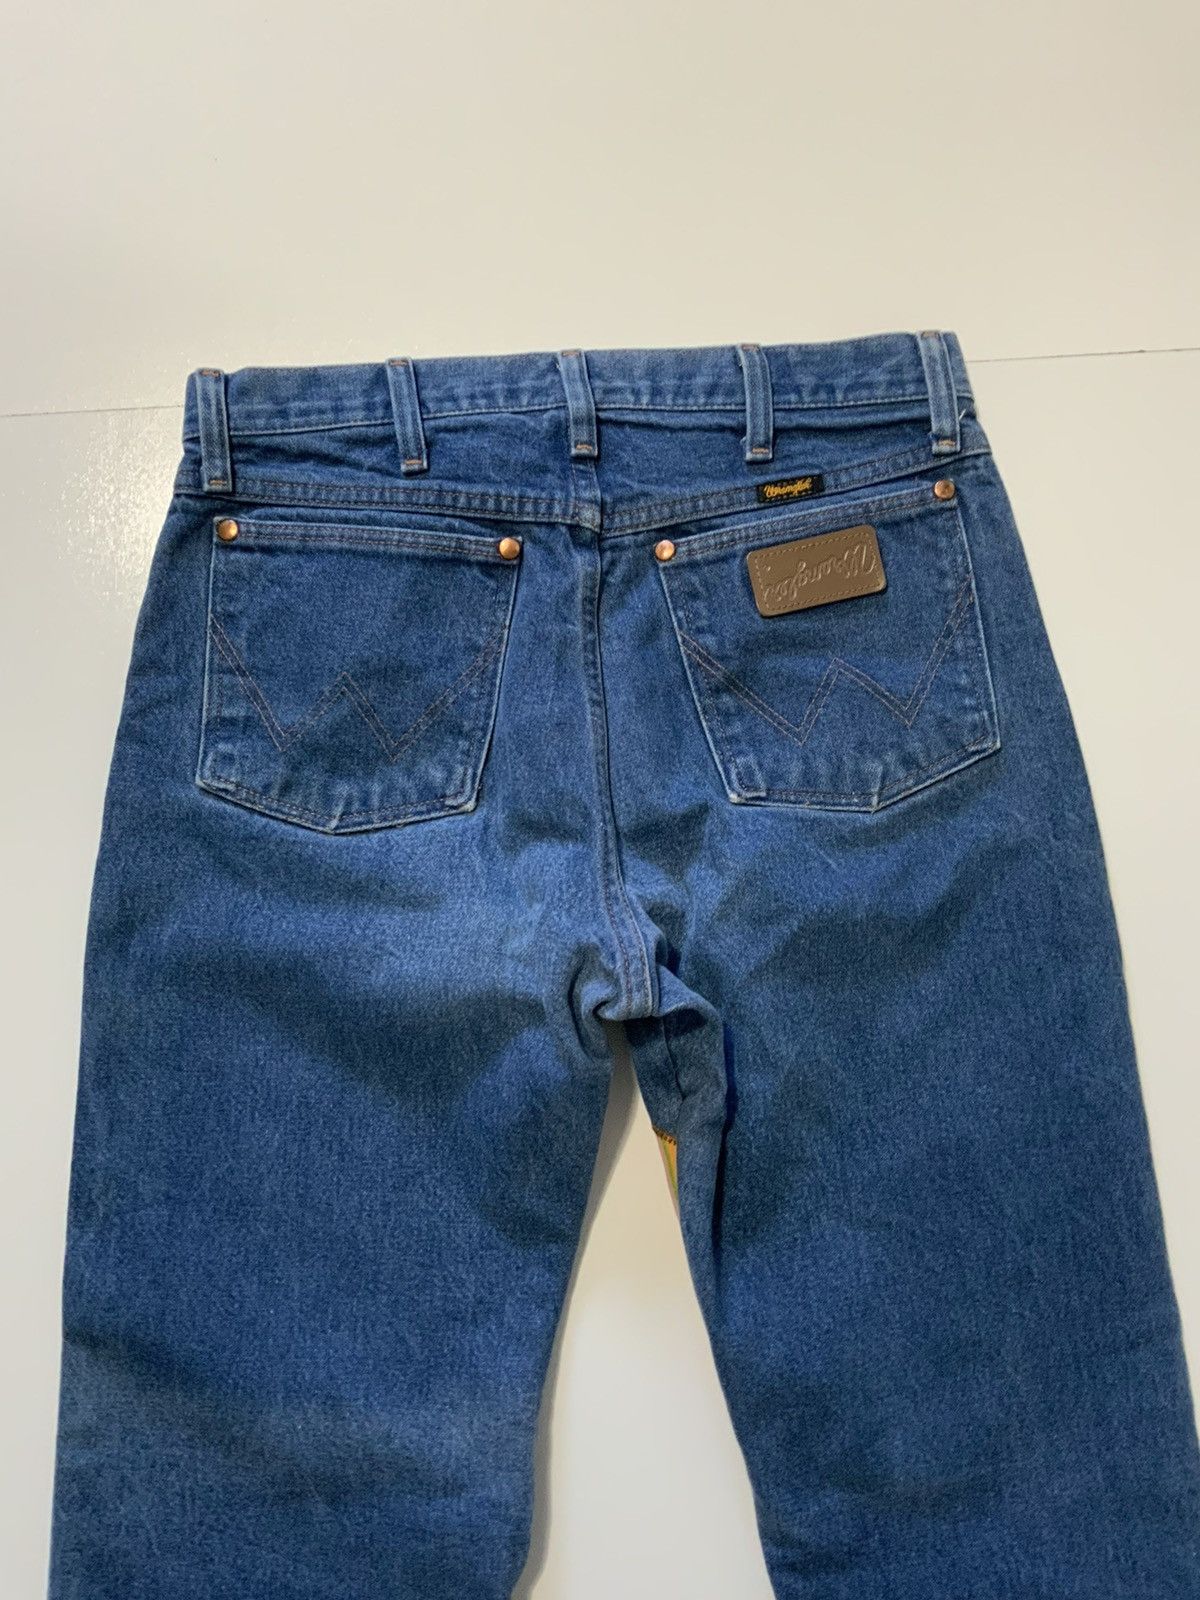 Vintage Vintage Reworked Peter Max Chaps Art Denim Patchwork Jeans Size US 31 - 4 Thumbnail